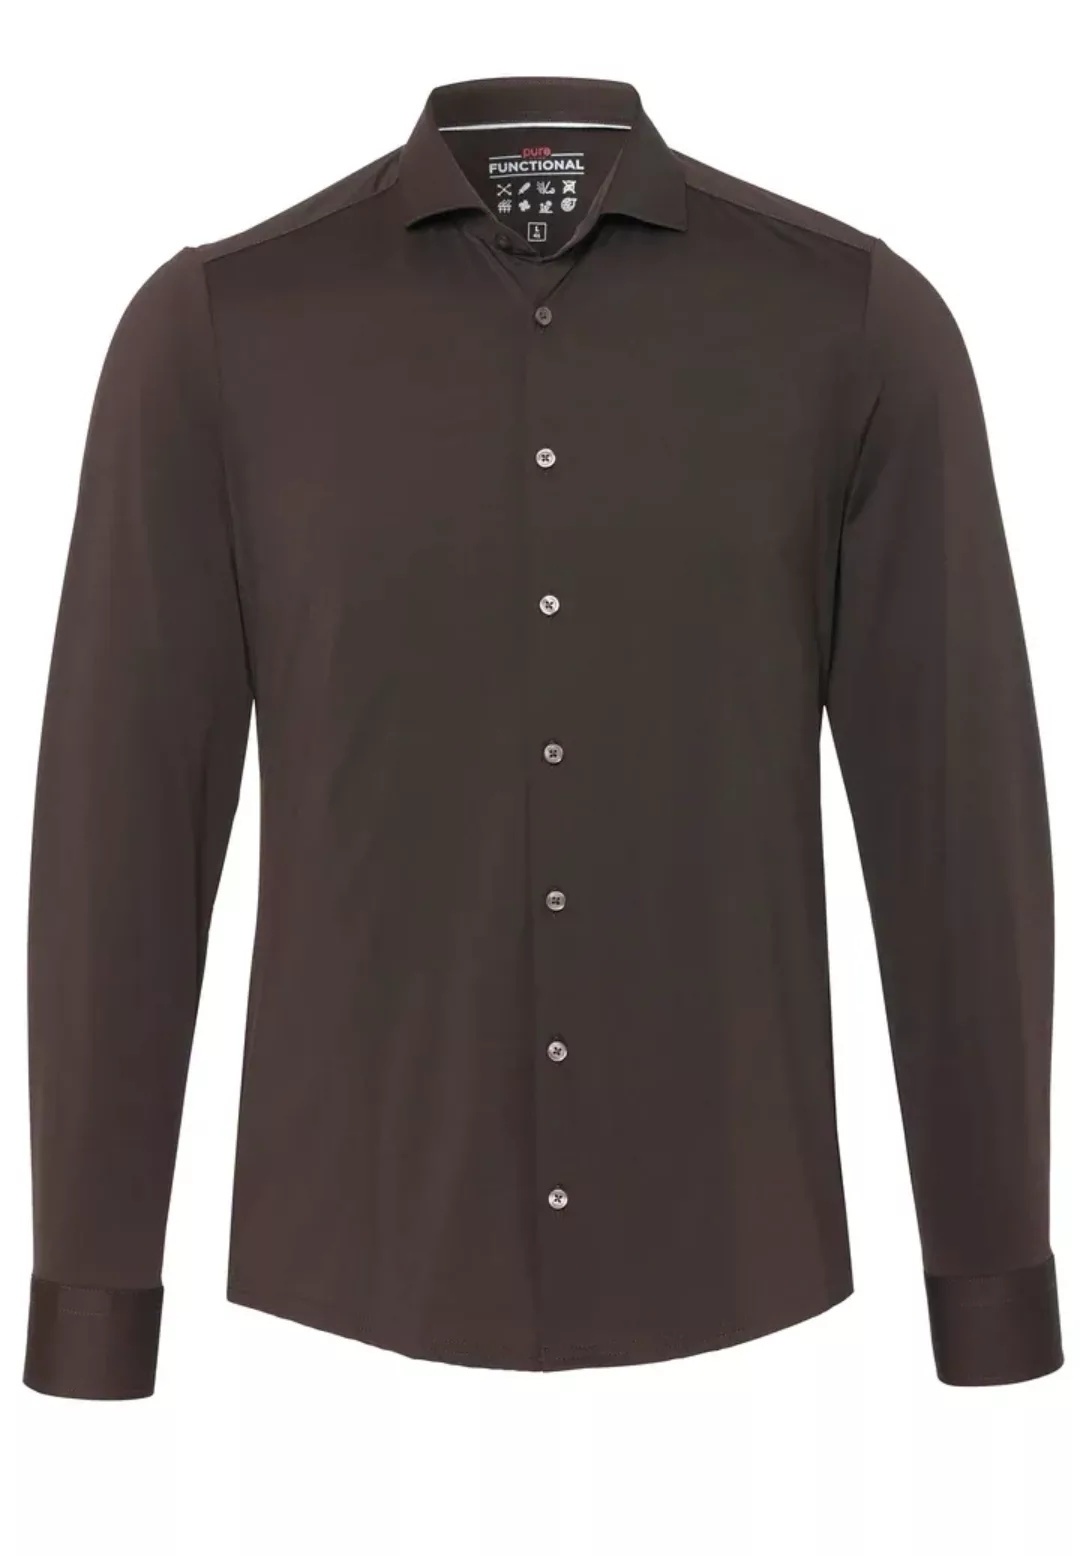 Pure The Functional Shirt Dunkelbraun - Größe 37 günstig online kaufen